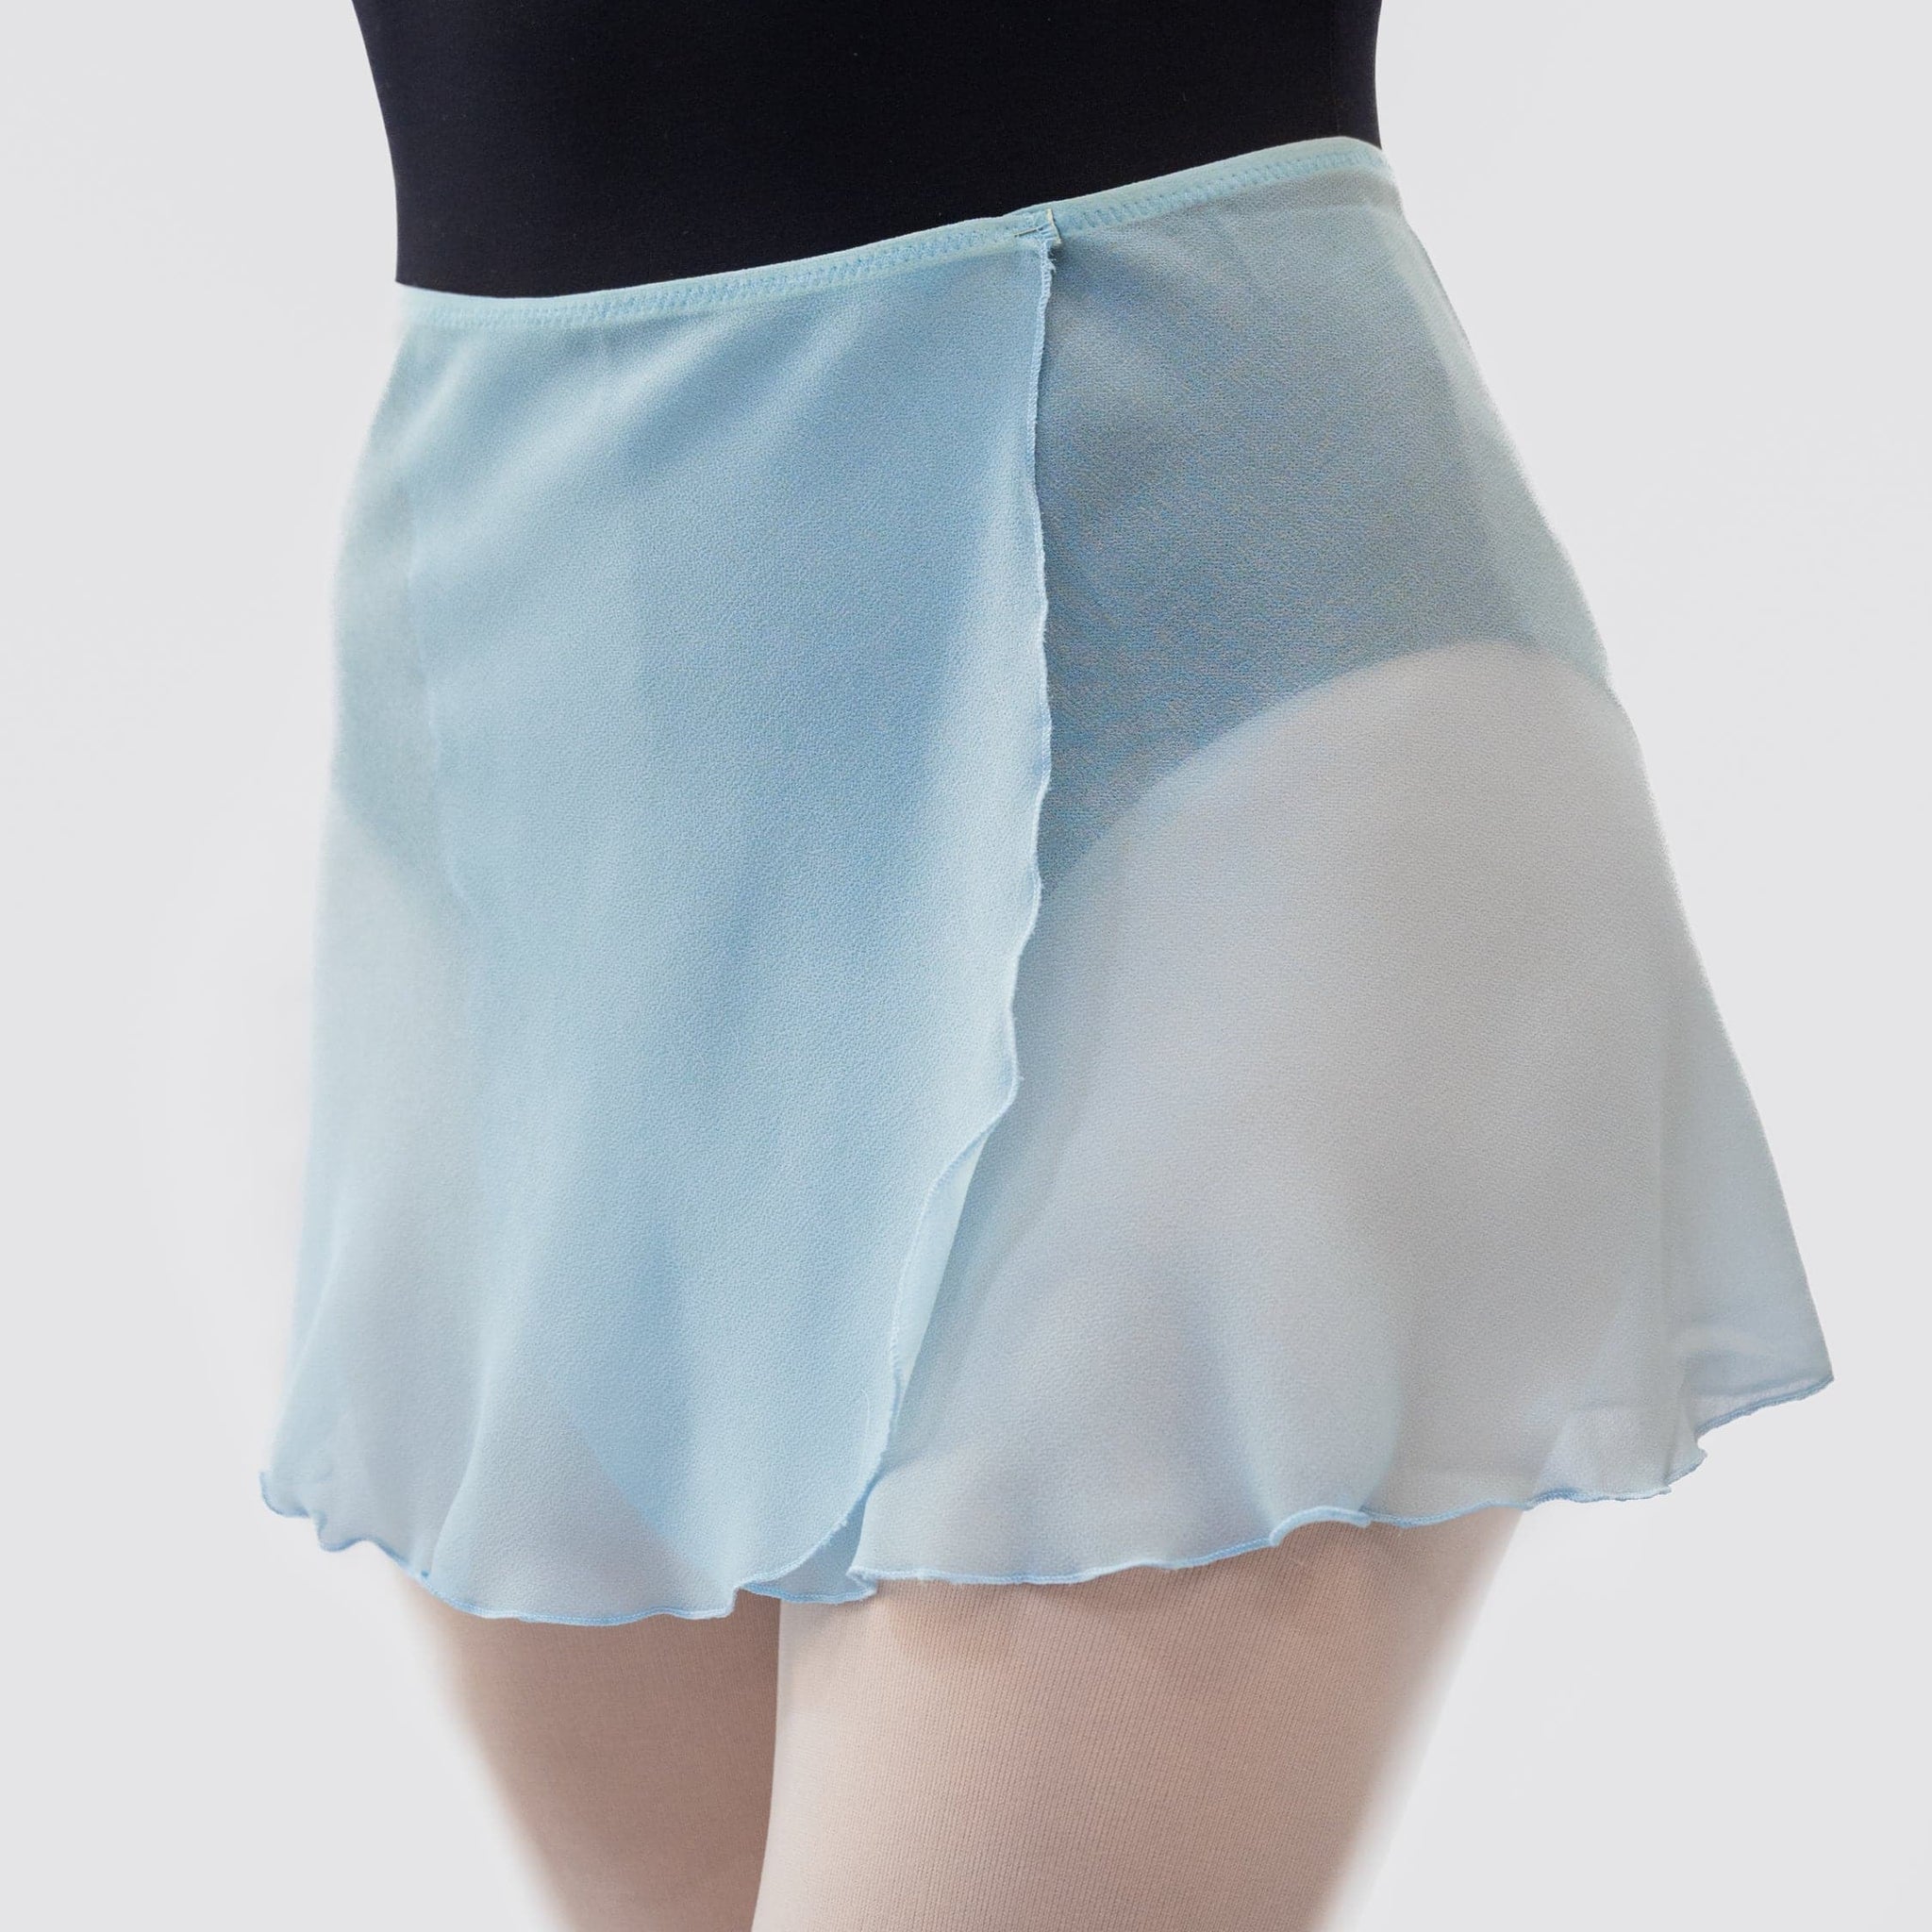 Skirt Danza MP301 Wrap - Light Blue della MP Short Dance Atelier